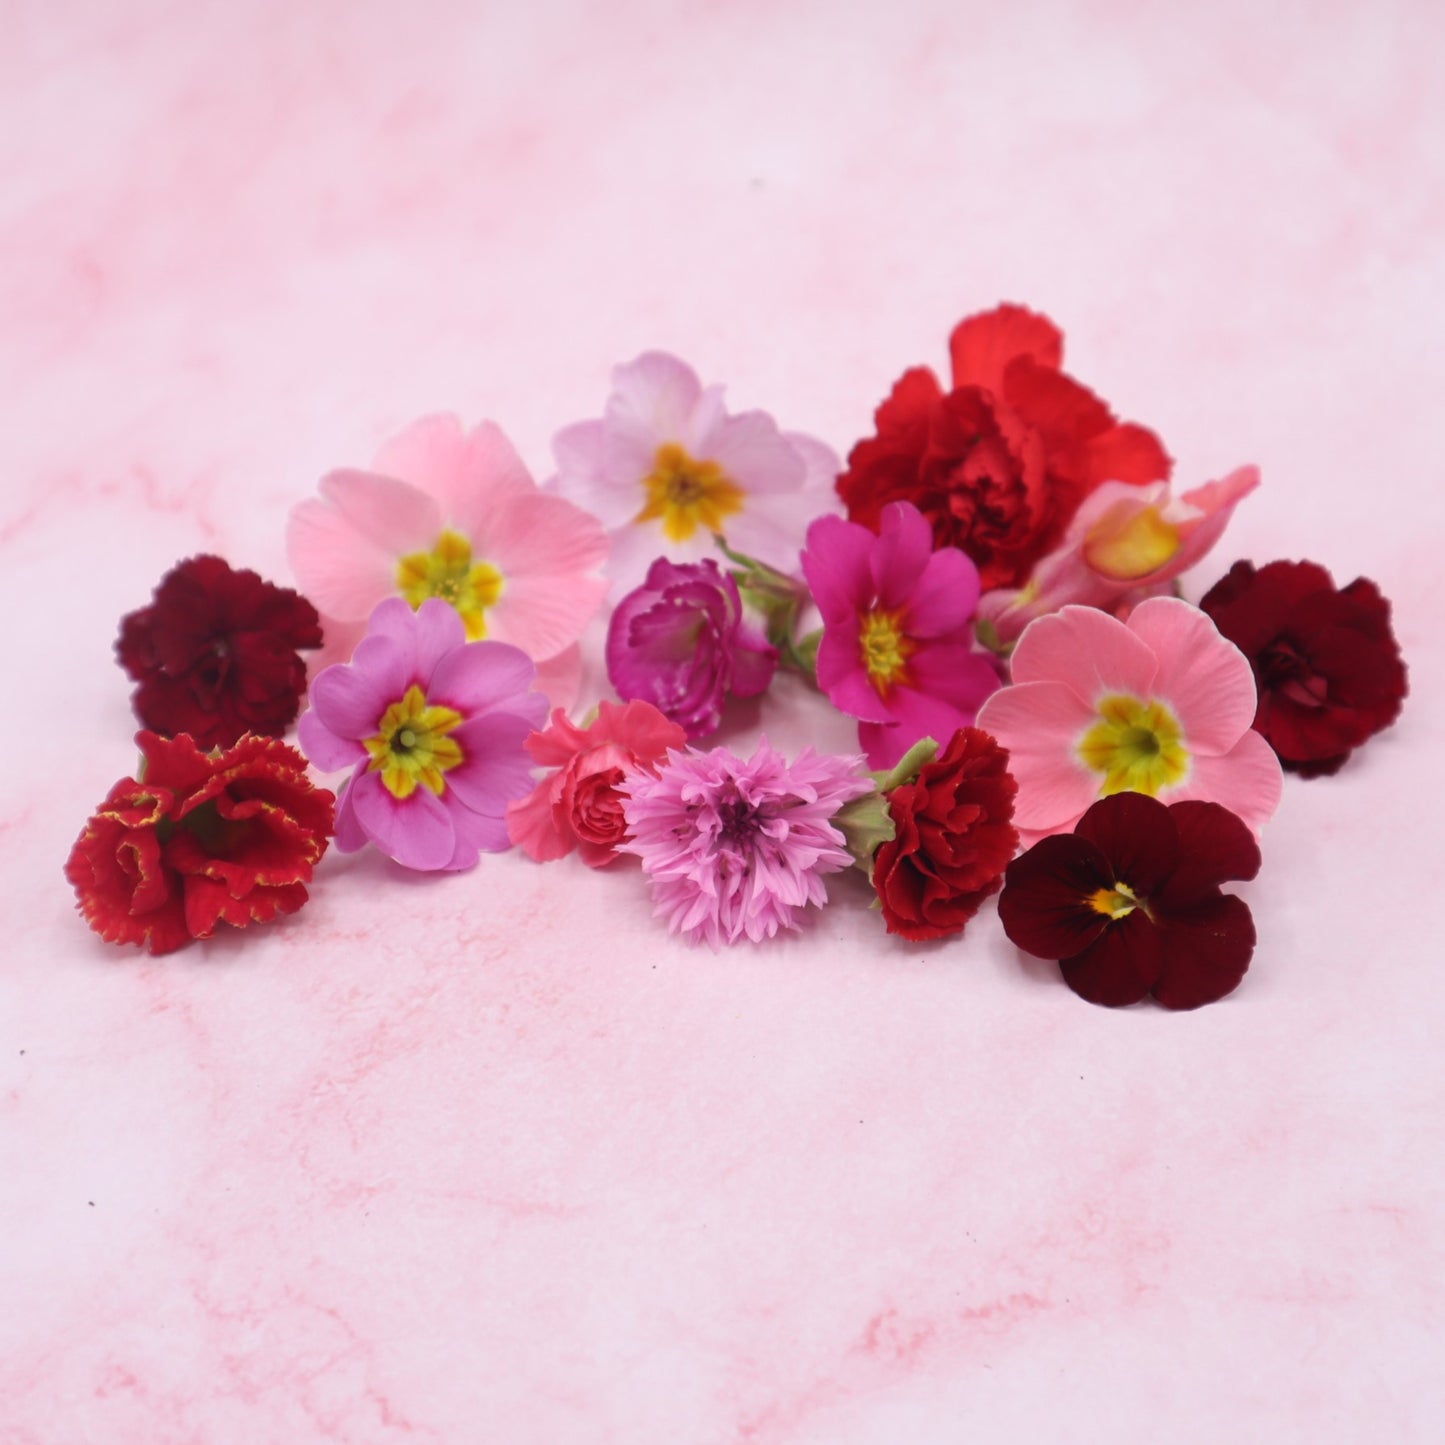 liefdes mix , valentijn eetbare bloemen. rood en roze